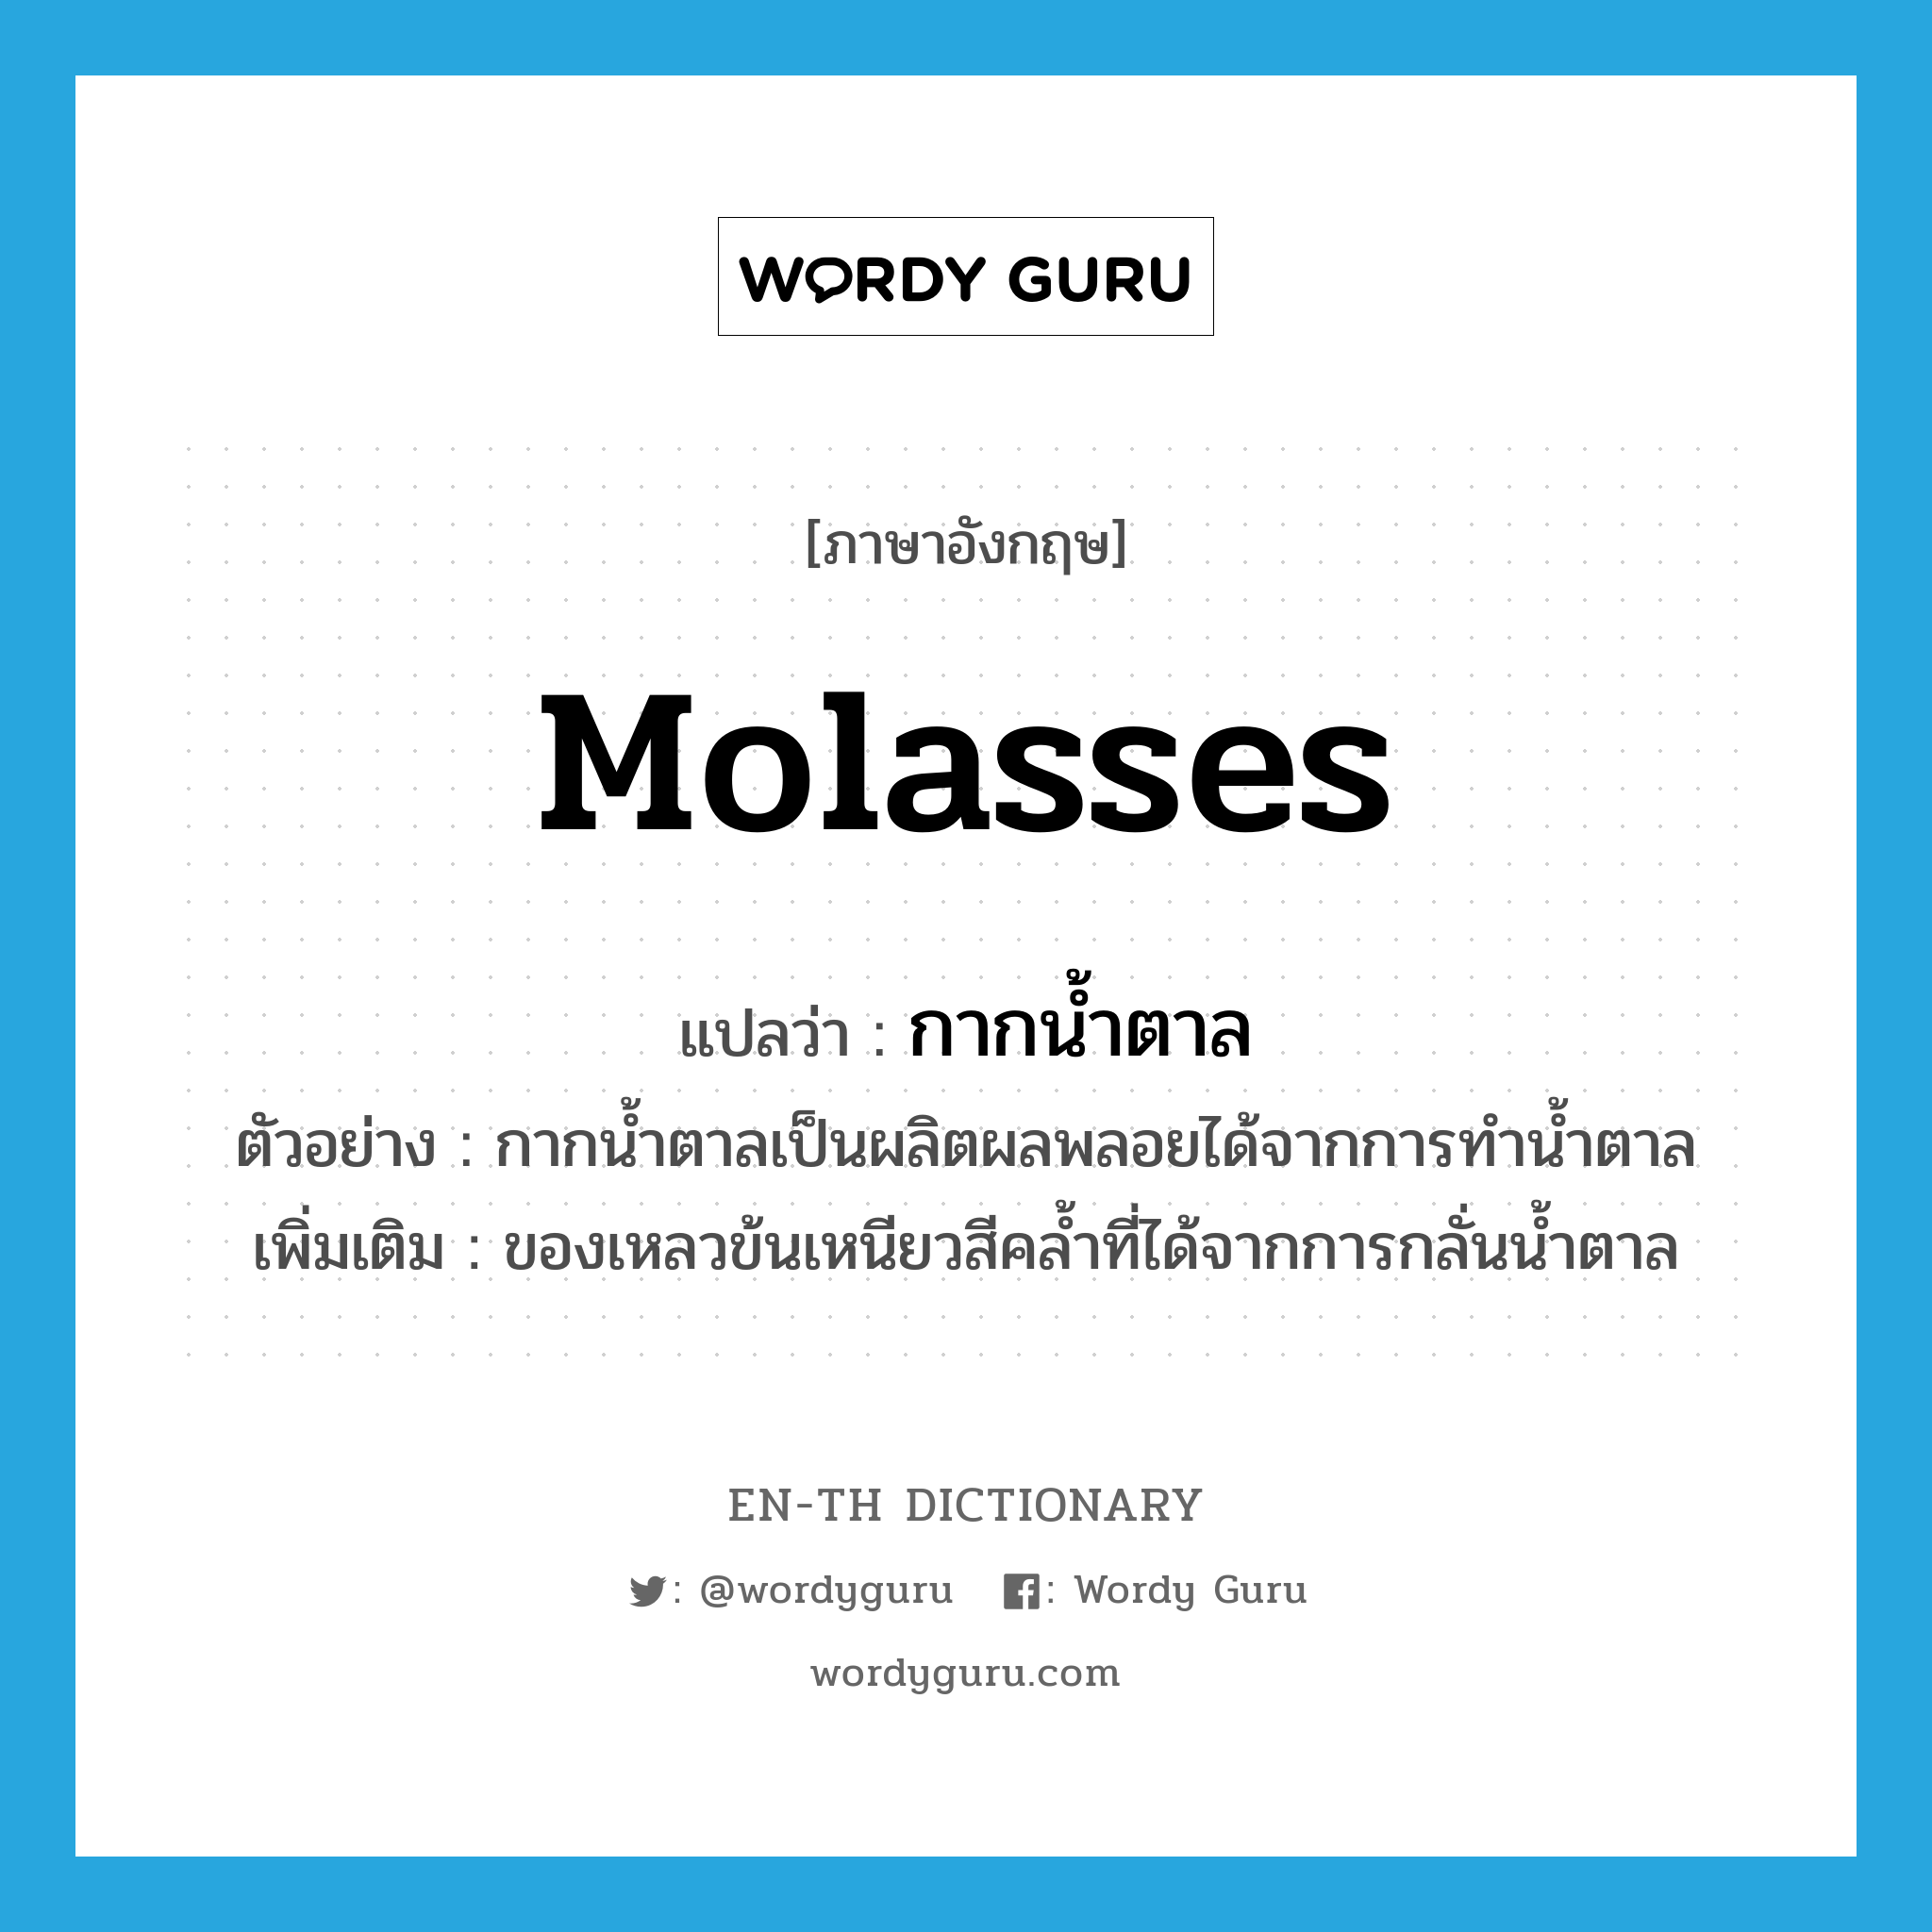 molasses แปลว่า?, คำศัพท์ภาษาอังกฤษ molasses แปลว่า กากน้ำตาล ประเภท N ตัวอย่าง กากน้ำตาลเป็นผลิตผลพลอยได้จากการทำน้ำตาล เพิ่มเติม ของเหลวข้นเหนียวสีคล้ำที่ได้จากการกลั่นน้ำตาล หมวด N